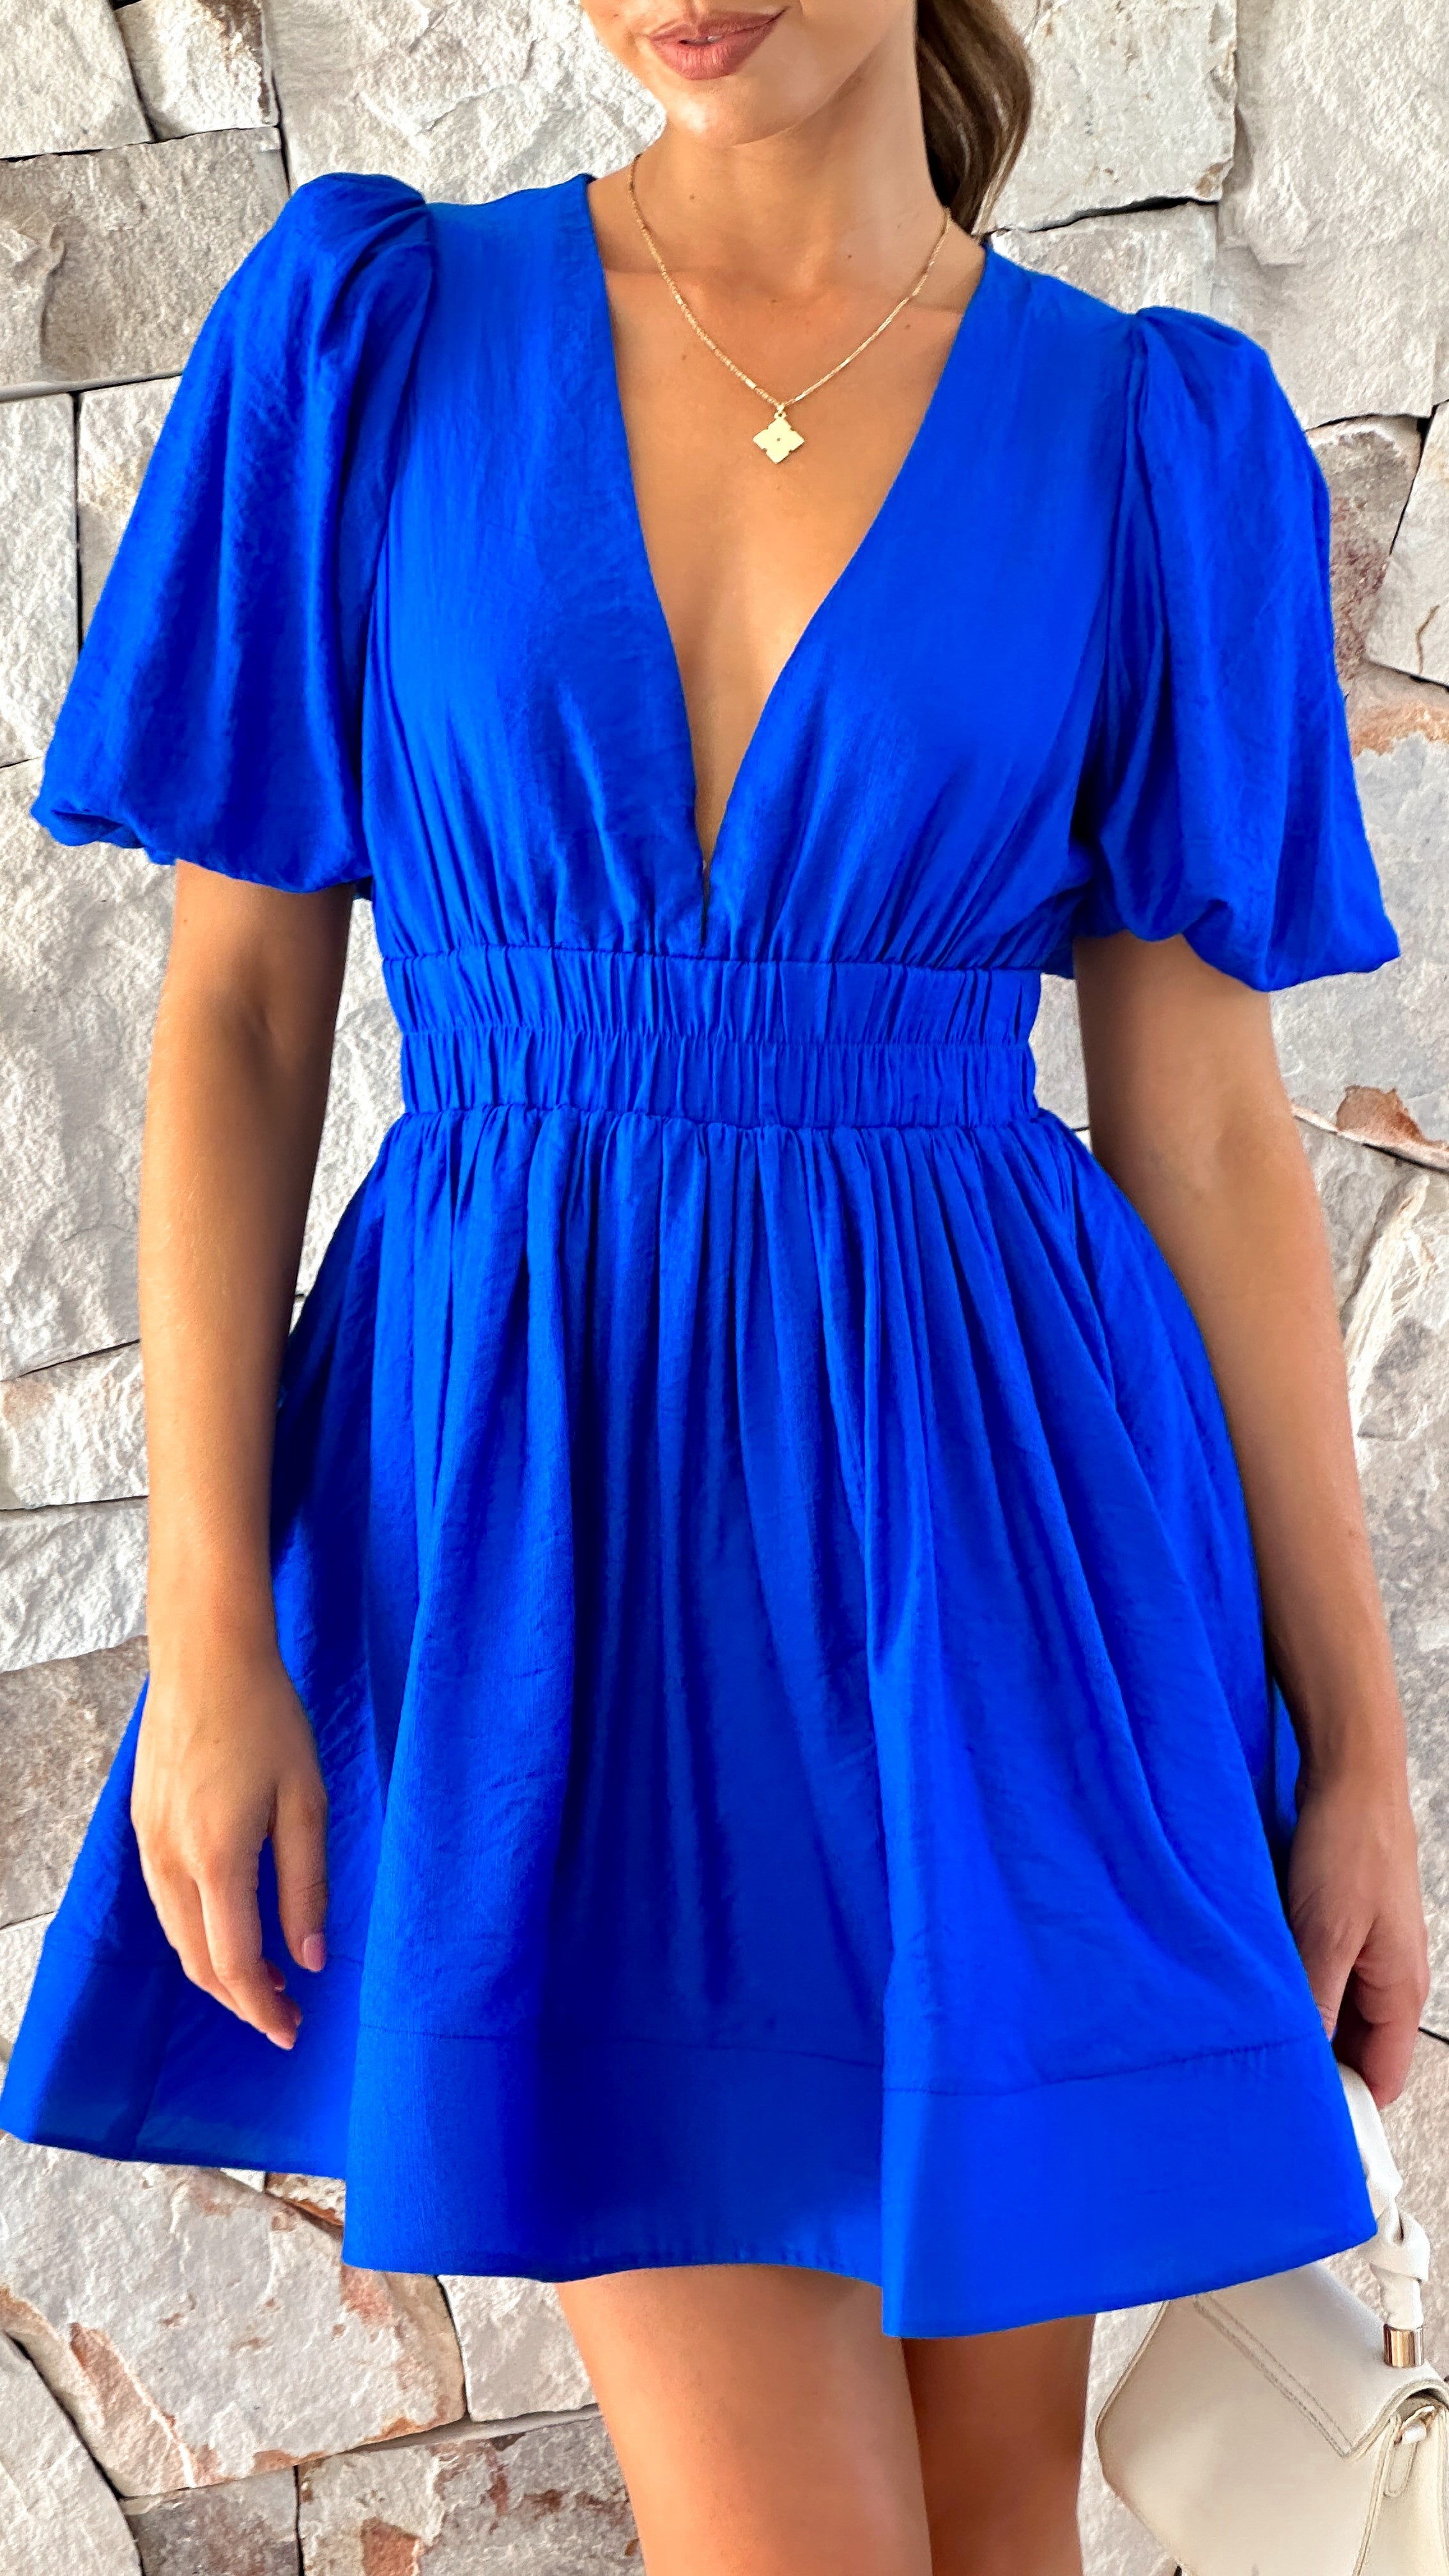 Erin Mini Dress - Royal Blue